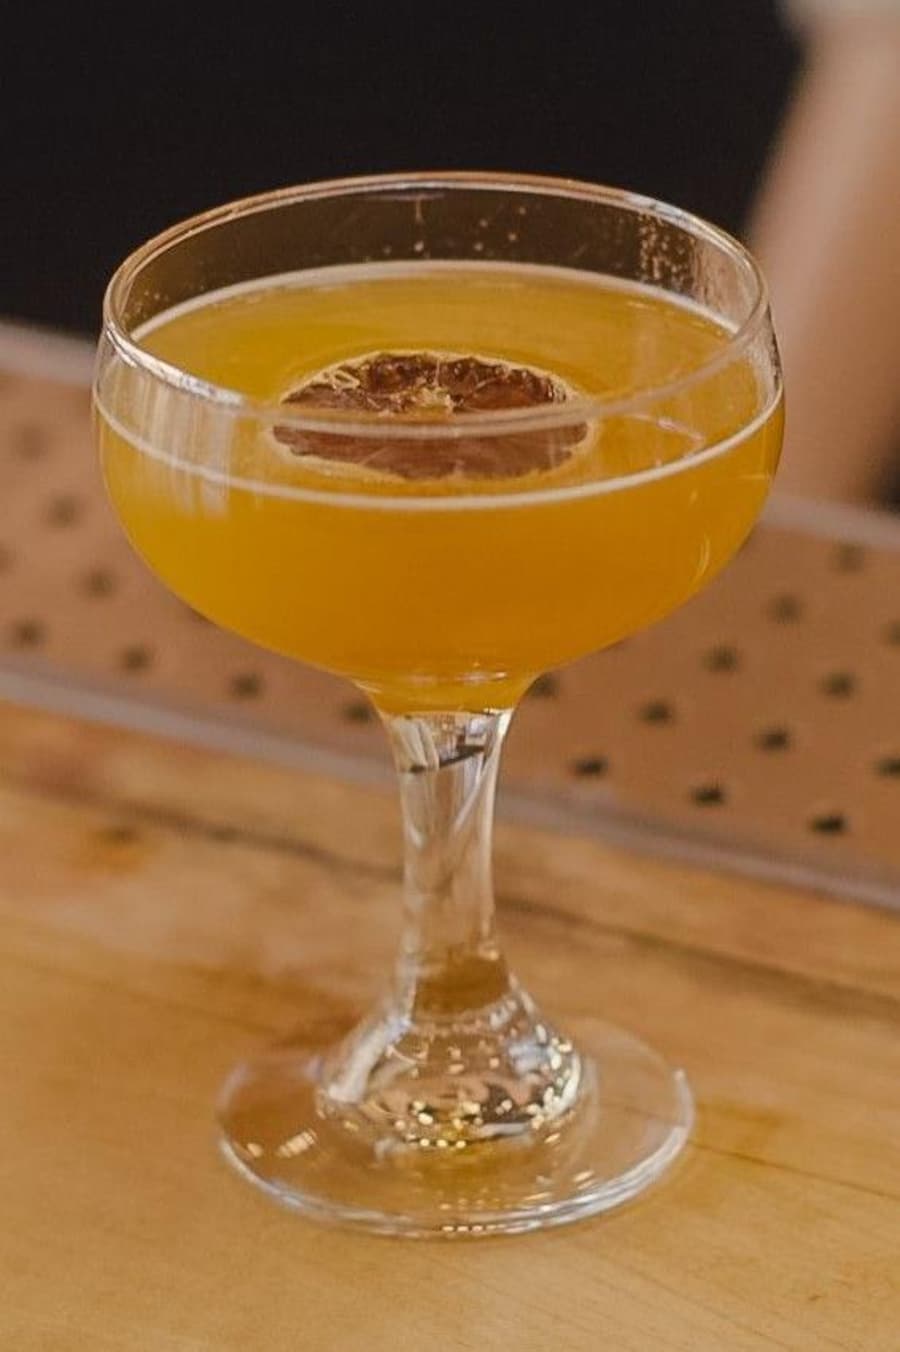 Un verre rempli d'un mocktail orangé avec une rondelle de citron déshydratée.